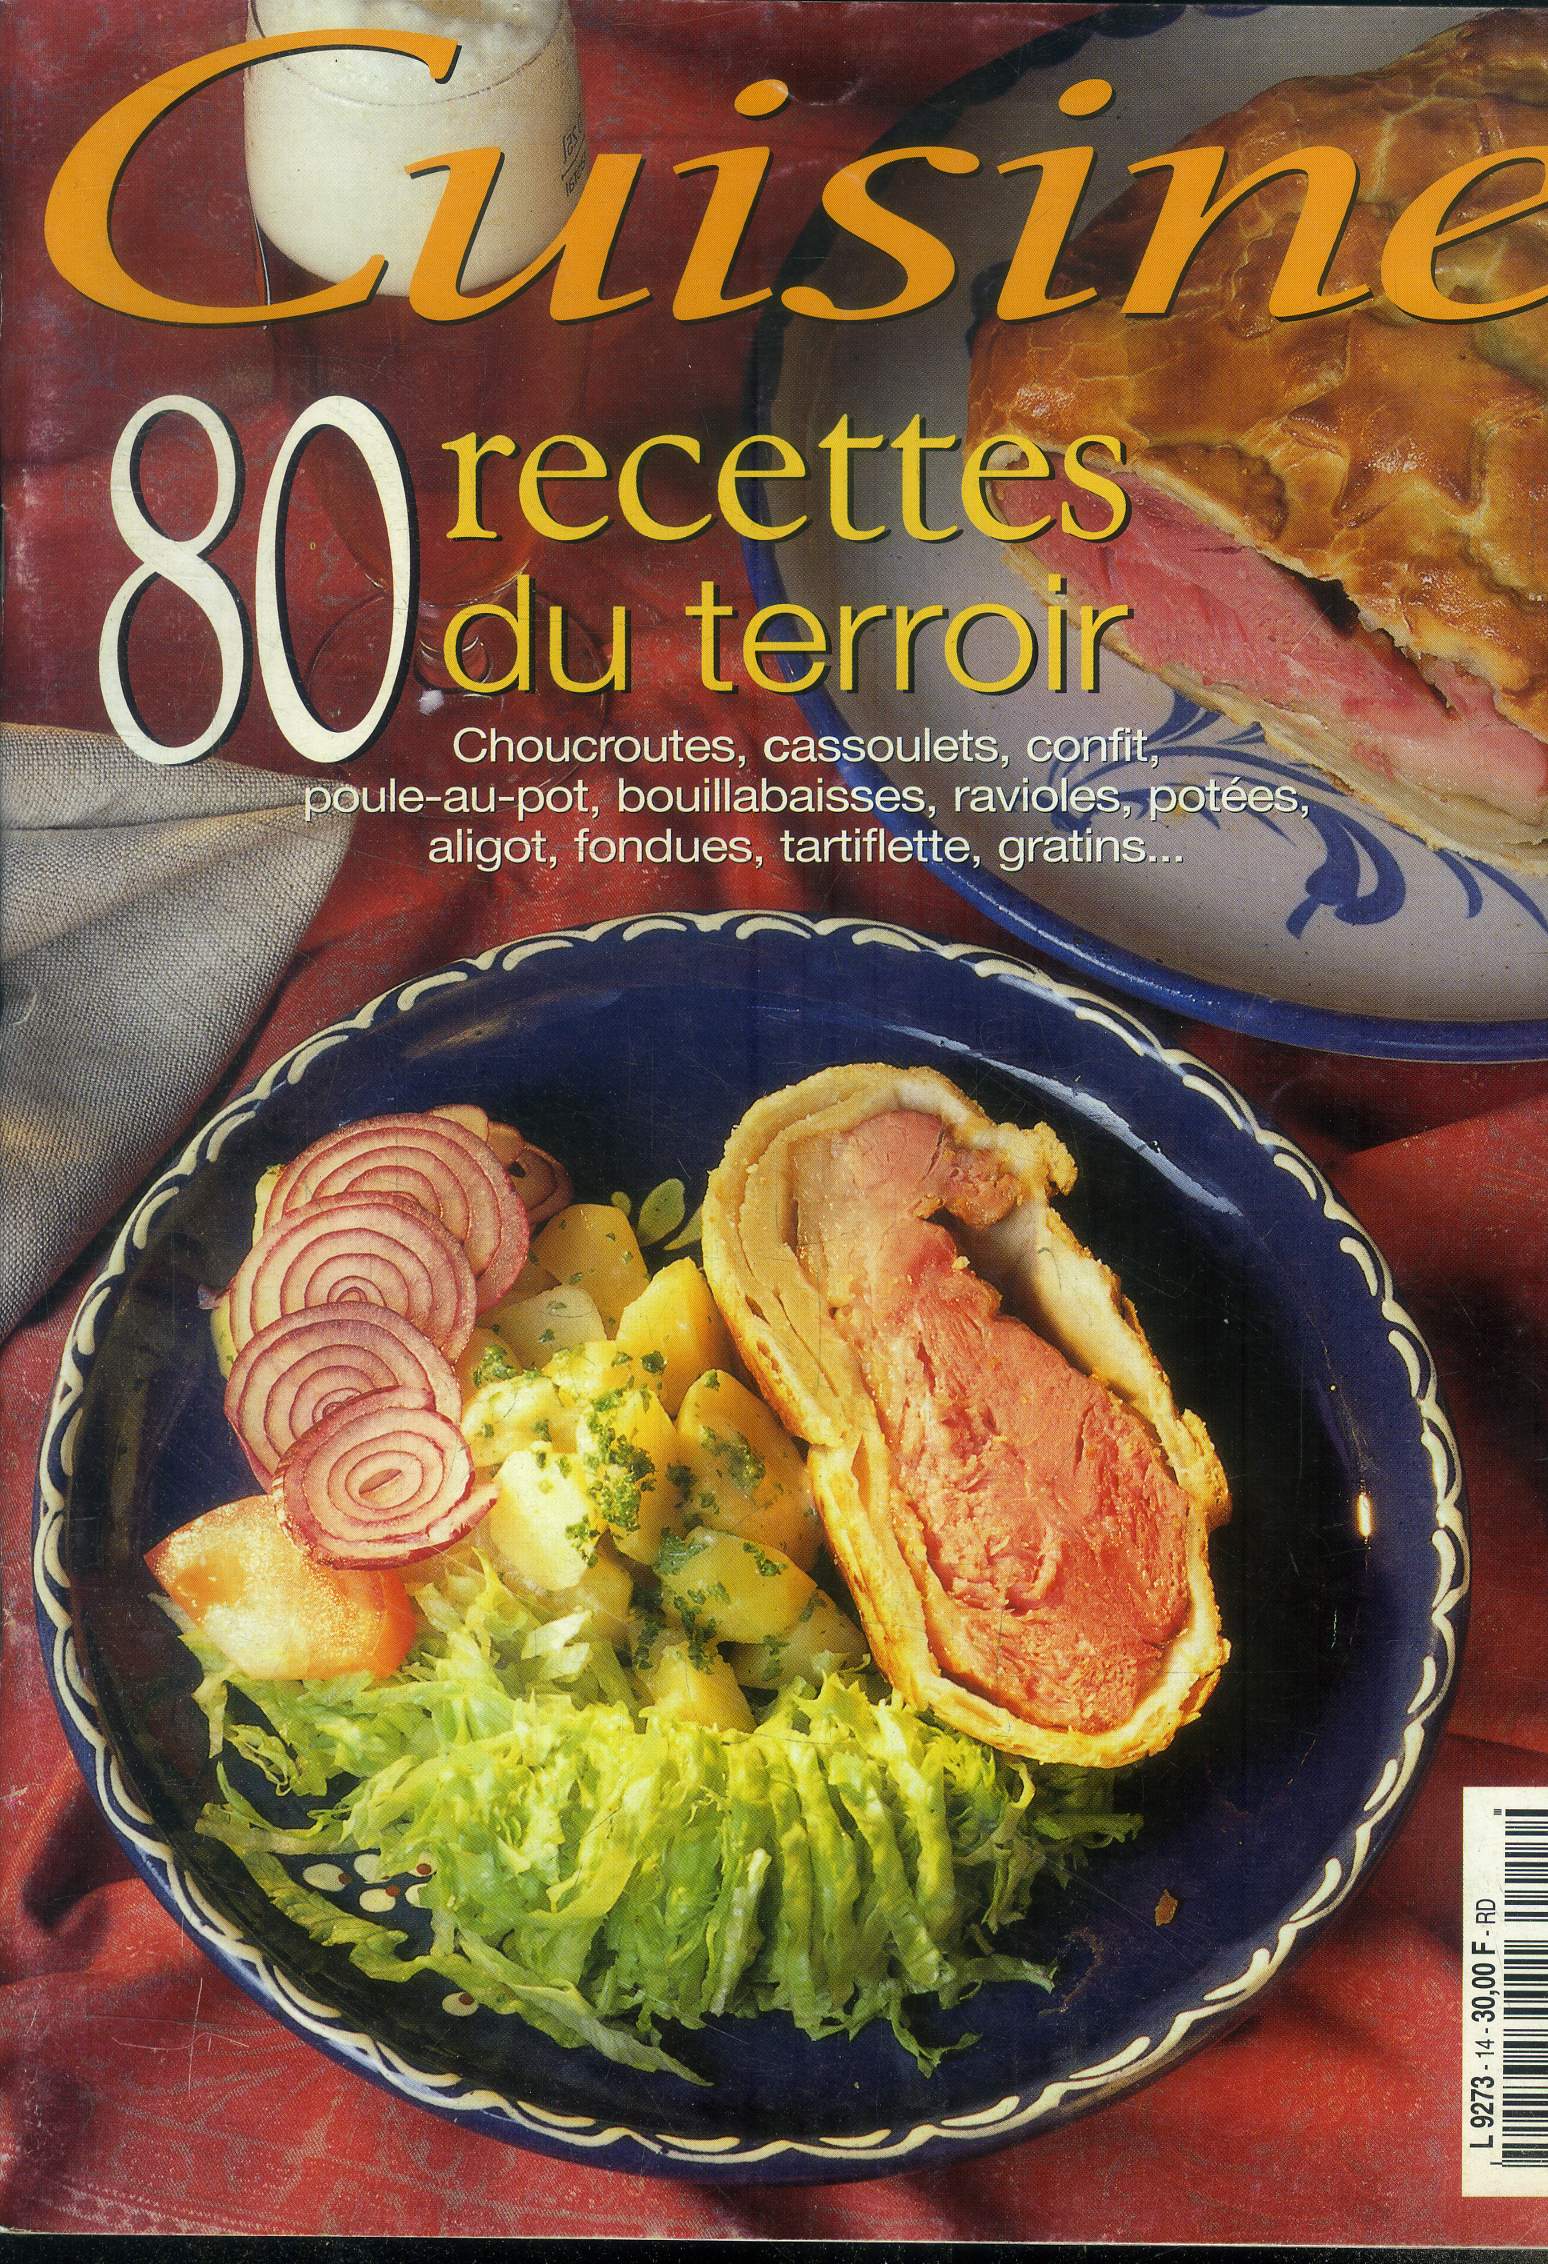 Cuisine n 14 - 80 recettes du terroir : Chocuroutes, cassoulets,confit, poule-au-pot, bouillabaisses, ravioles, potes, aligot,fondues, tartiflette, gratins,etc.